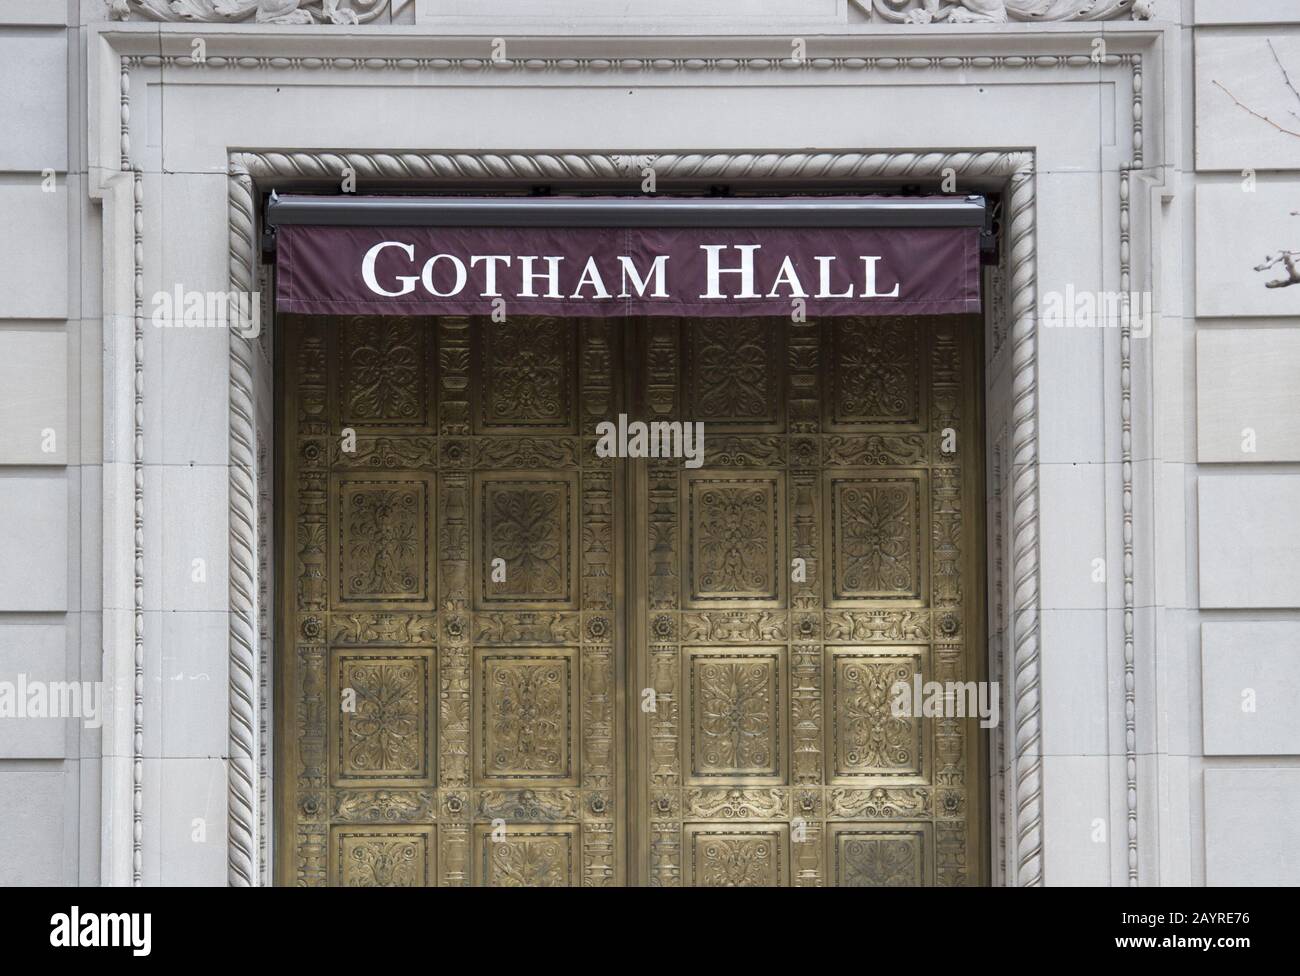 Gotham Hall wurde nach der fiktiven Stadt benannt. Es war bekannt als die Heimat des Superhelden Batman und seiner Verbündeten und Feinde. New York City Stockfoto